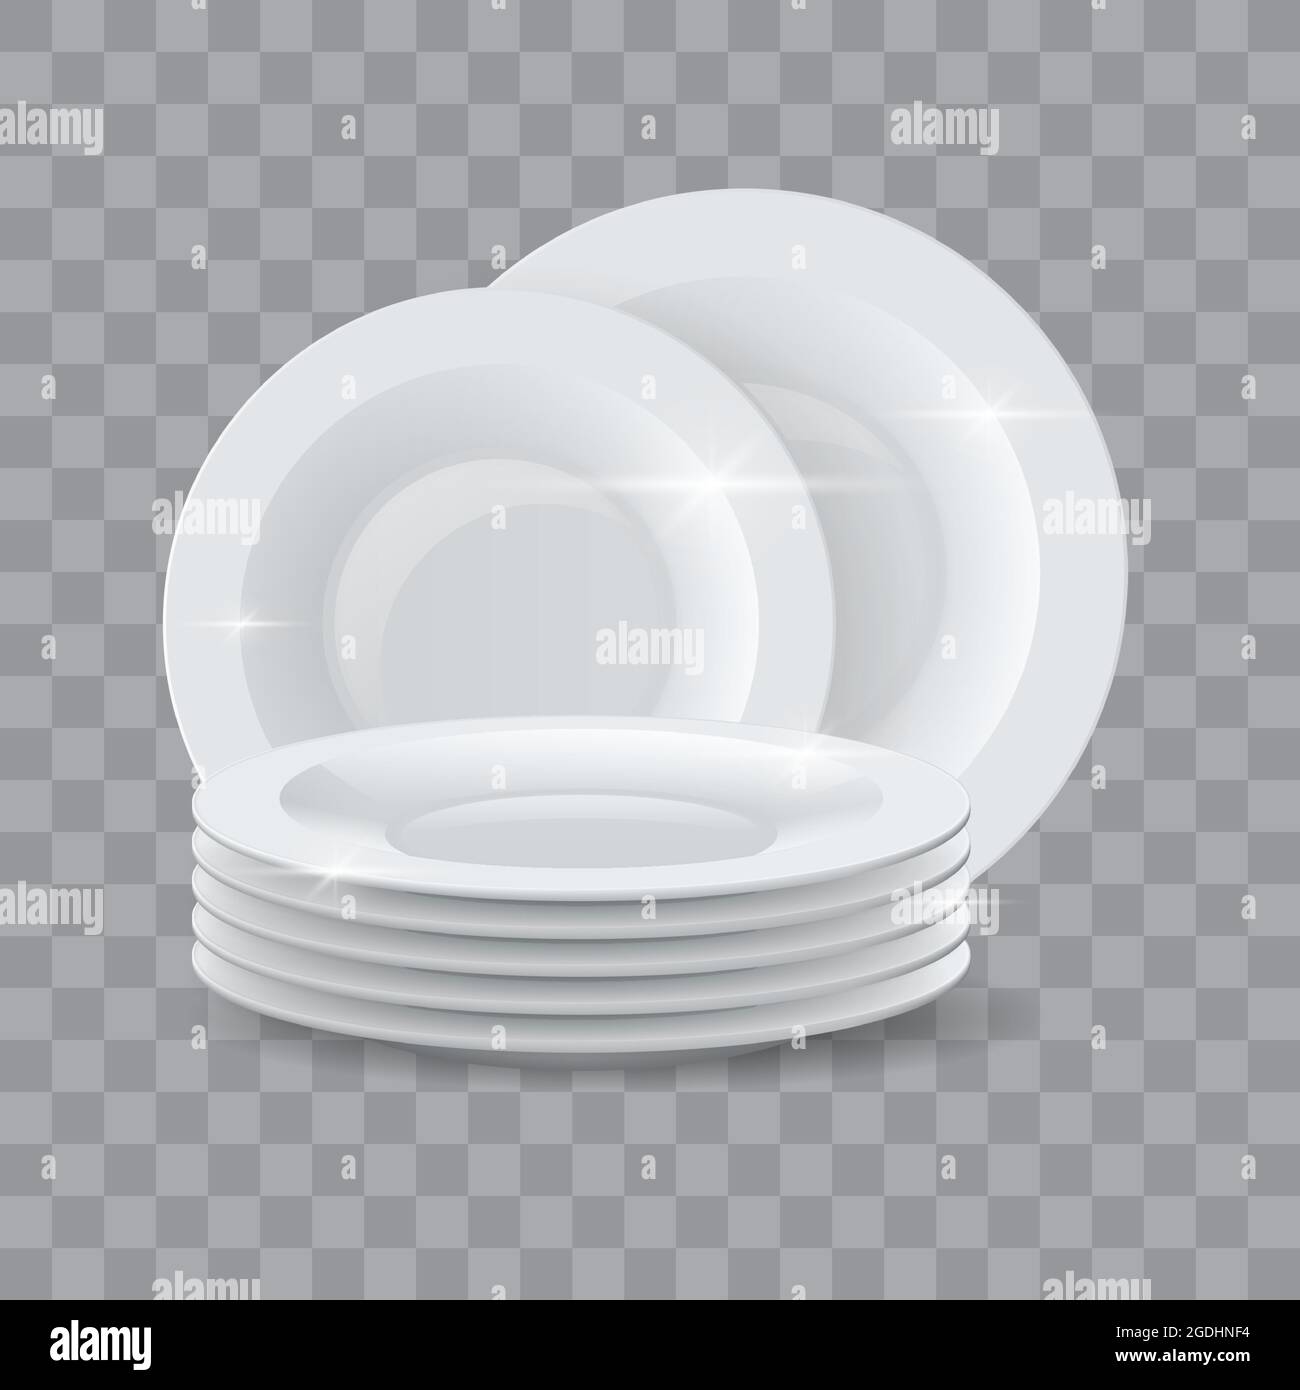 Vaisselle lavée. Pile de assiettes à dîner réalistes et propres pour les publicités de détergent ou de savon pour lave-vaisselle. Céramique brillant vaisselle pile 3D maquette vectorielle Illustration de Vecteur